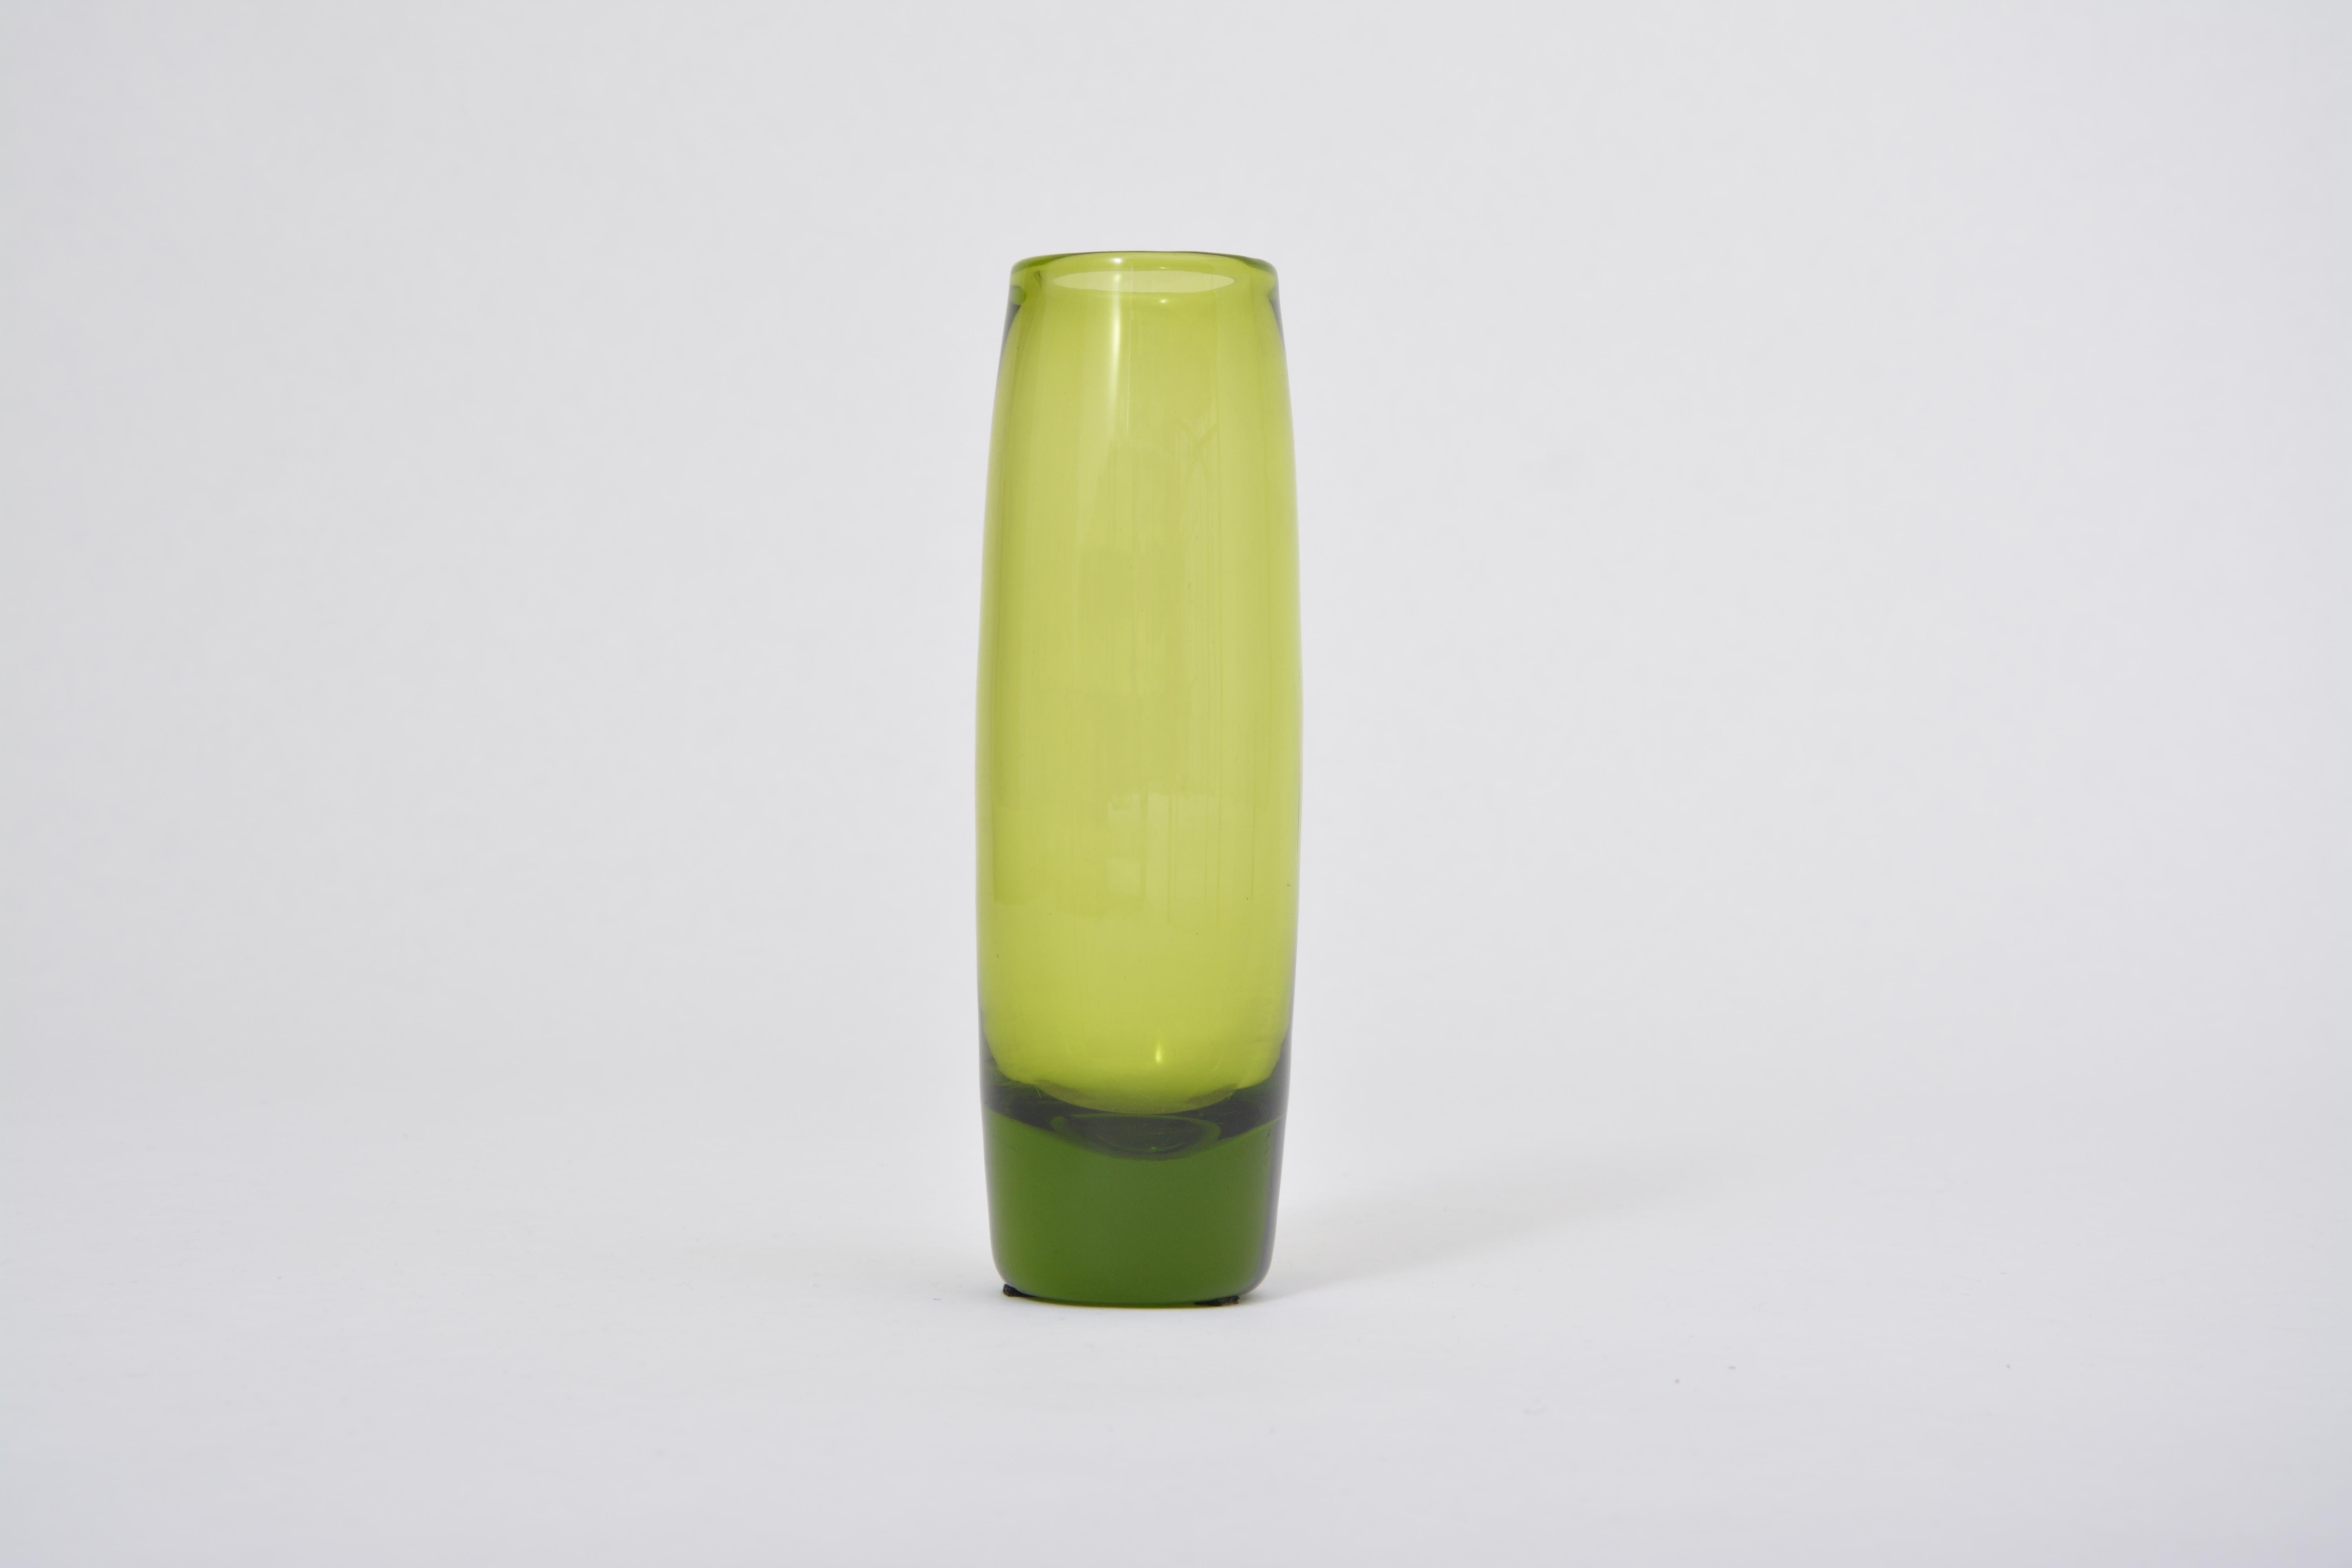 Vintage Maygreen Vase von Per Lütken für Holmegaard
Vase aus grünem Glas aus der Serie Maygreen, entworfen von Per Lütken und hergestellt von Holmegaard.
 Die Serie wurde zwischen 1955 und 1974 produziert.